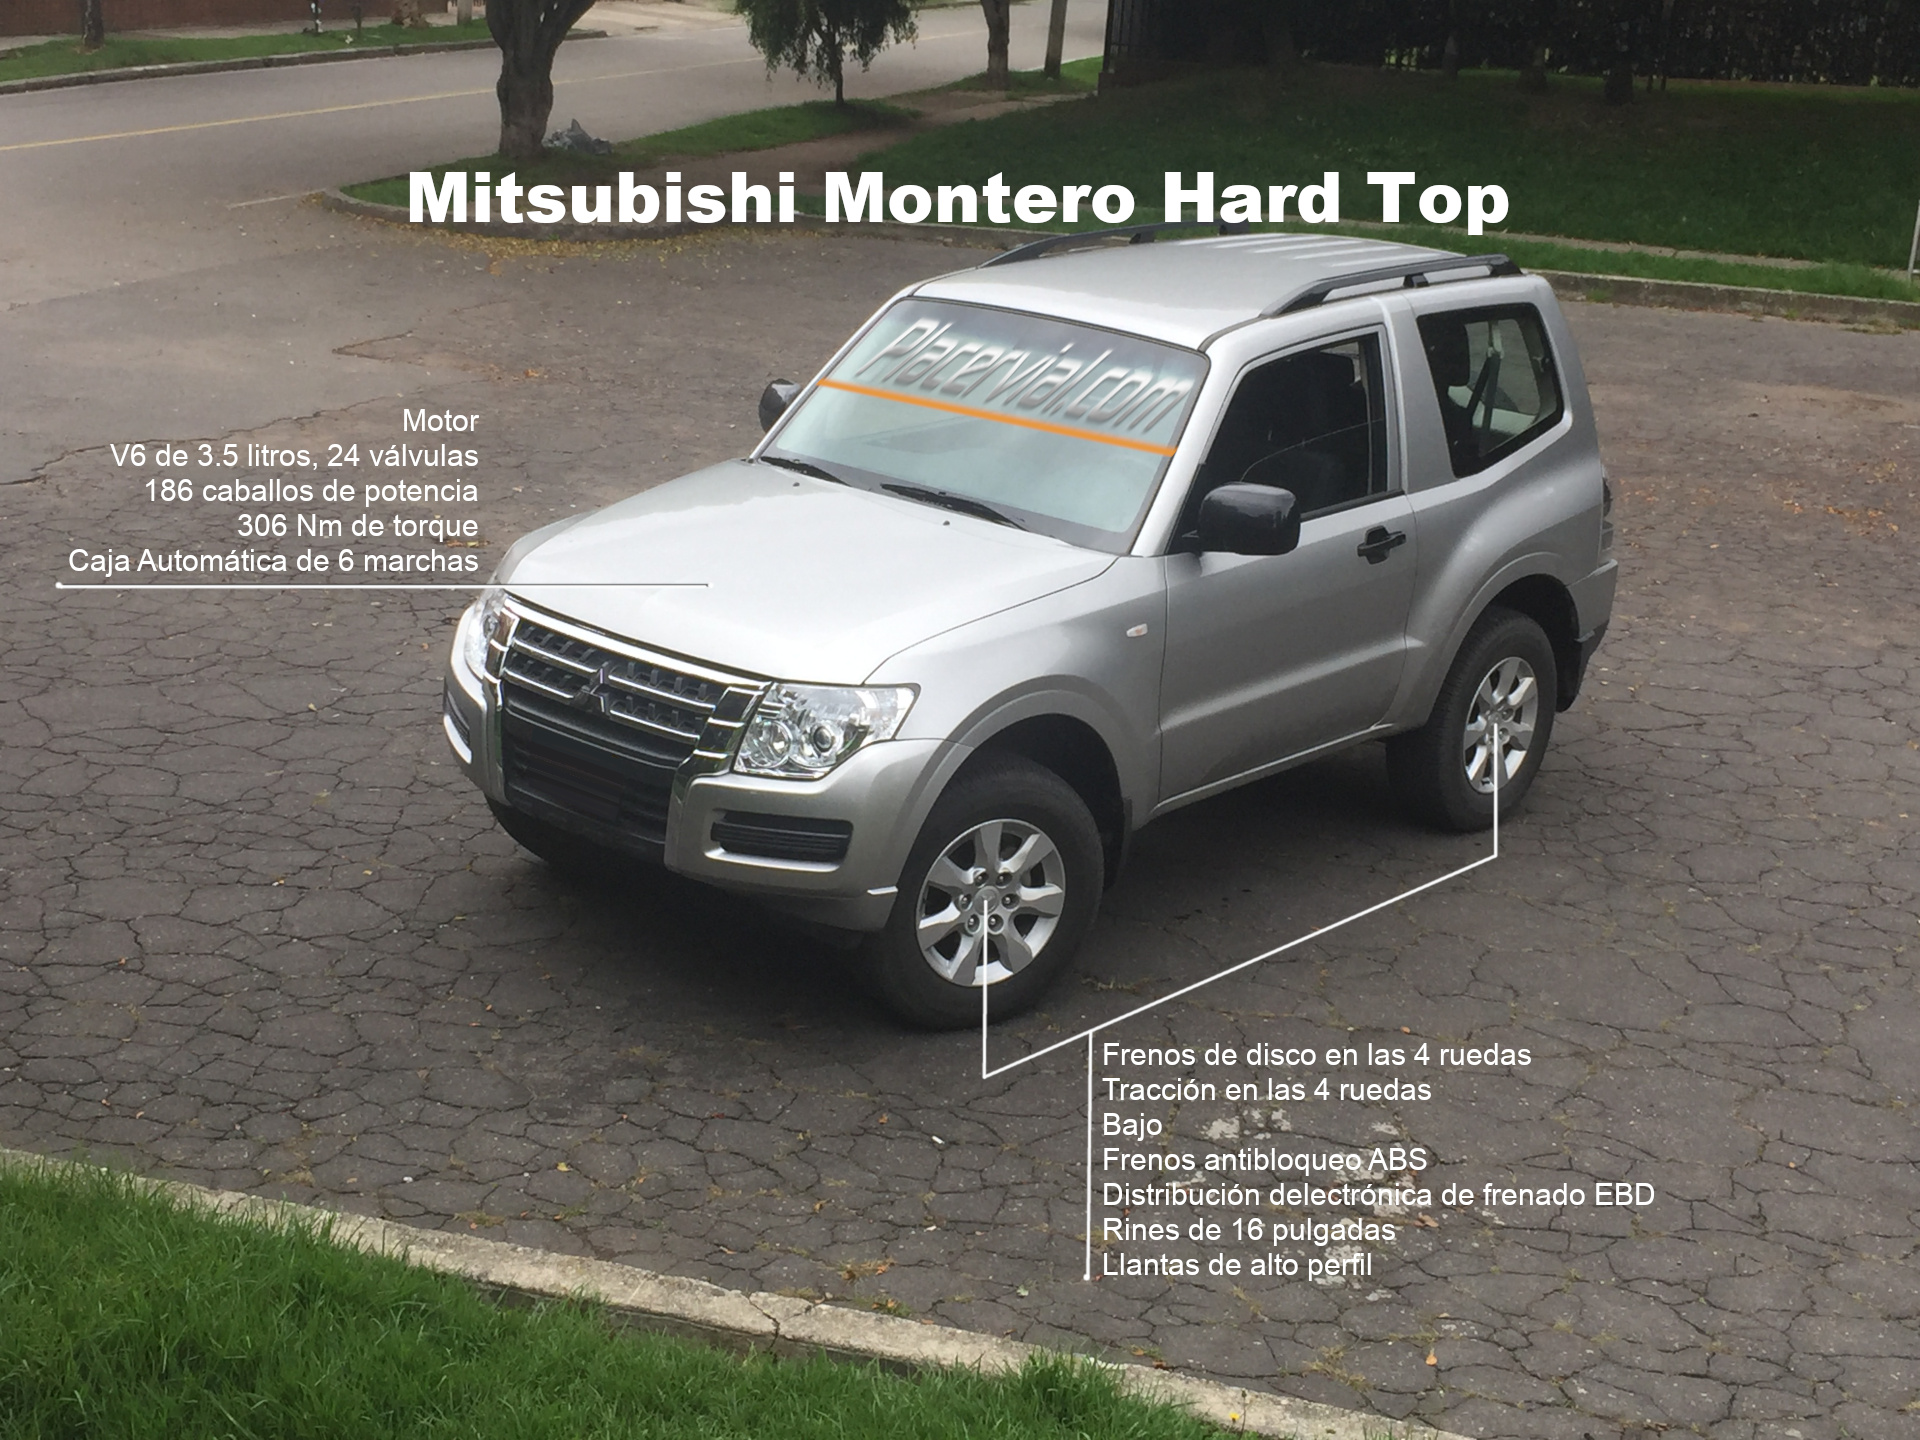 Mitsubishi Montero Hard Top: Infografía